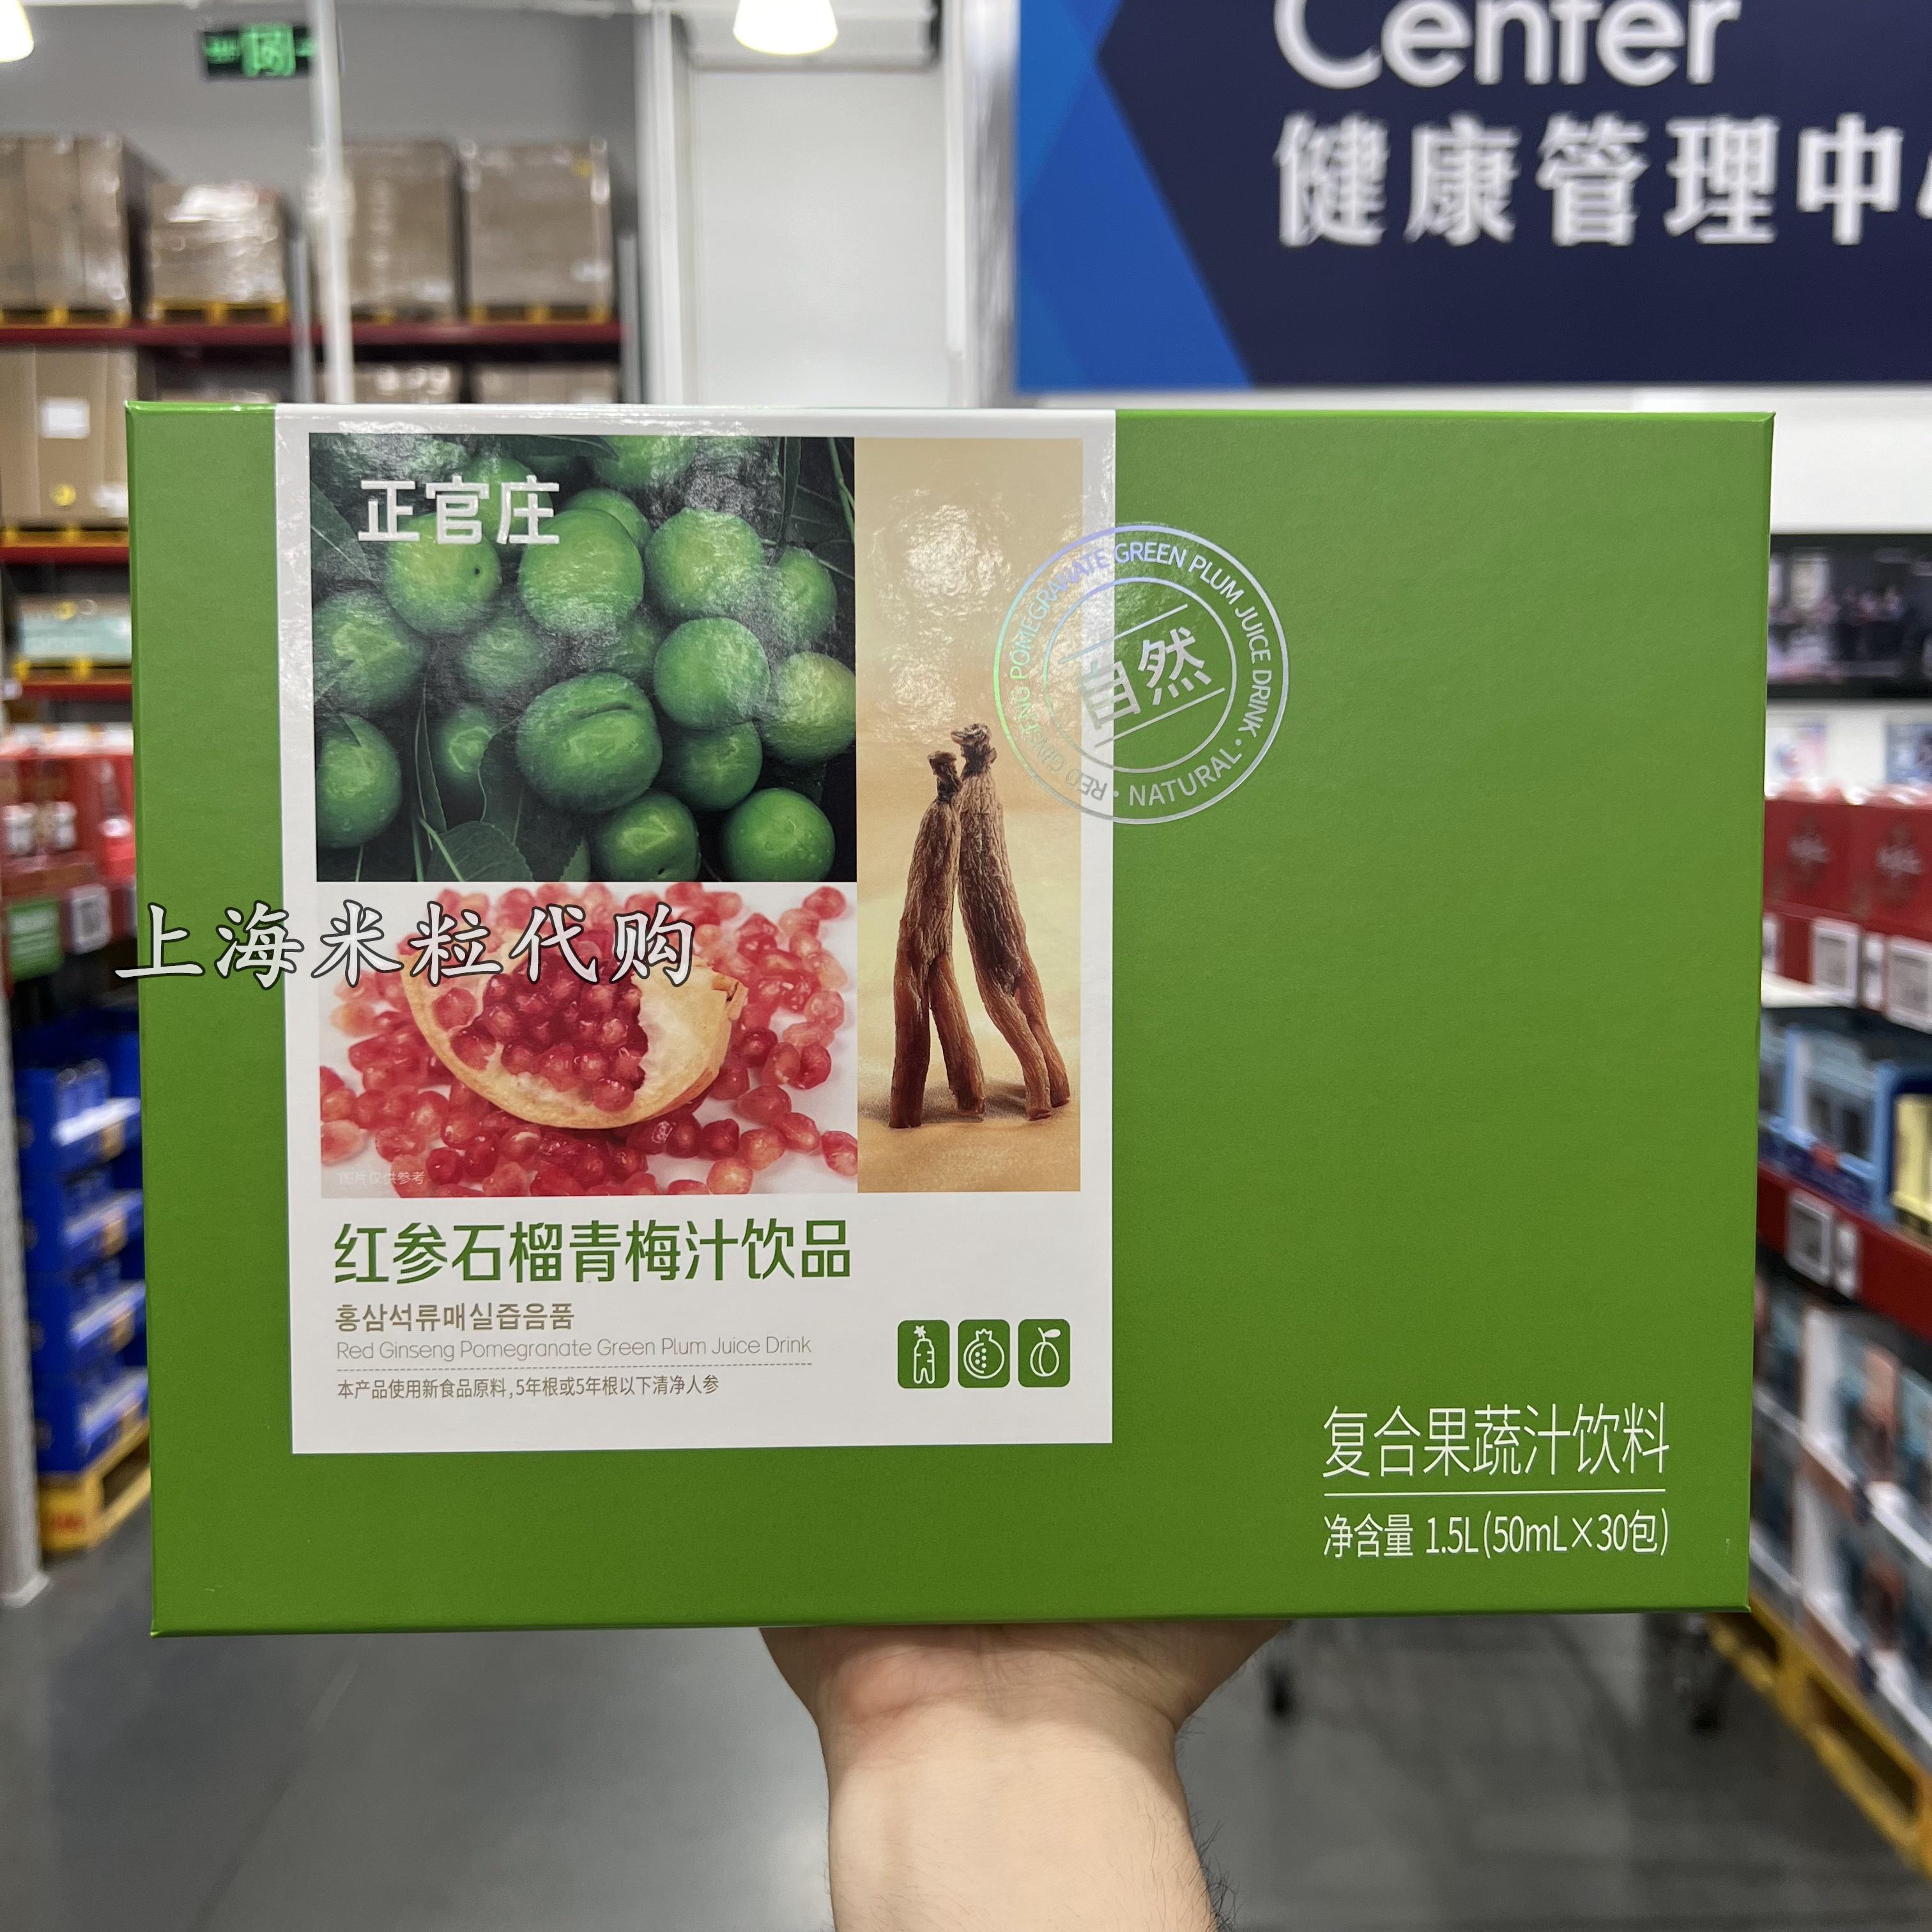 上海山姆代购正官庄红参石榴青梅汁饮料1.5L复合果蔬汁健康膳食